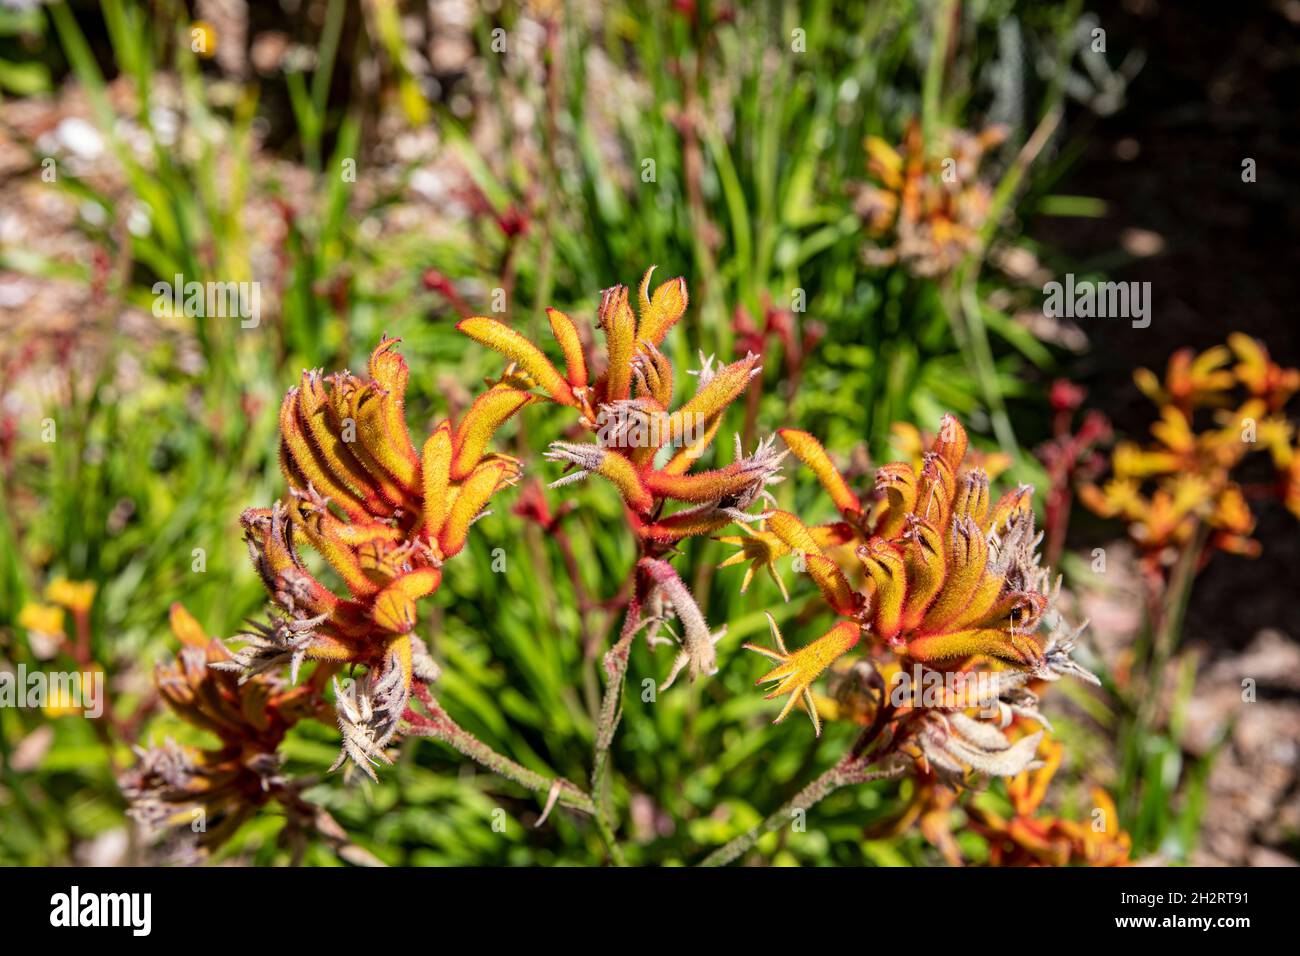 Haemodoraceae, pianta di zampa di canguro in fiore. La pianta è originaria dell'Australia occidentale, raffigurata in un giardino di Sydney, NSW, Australia Foto Stock